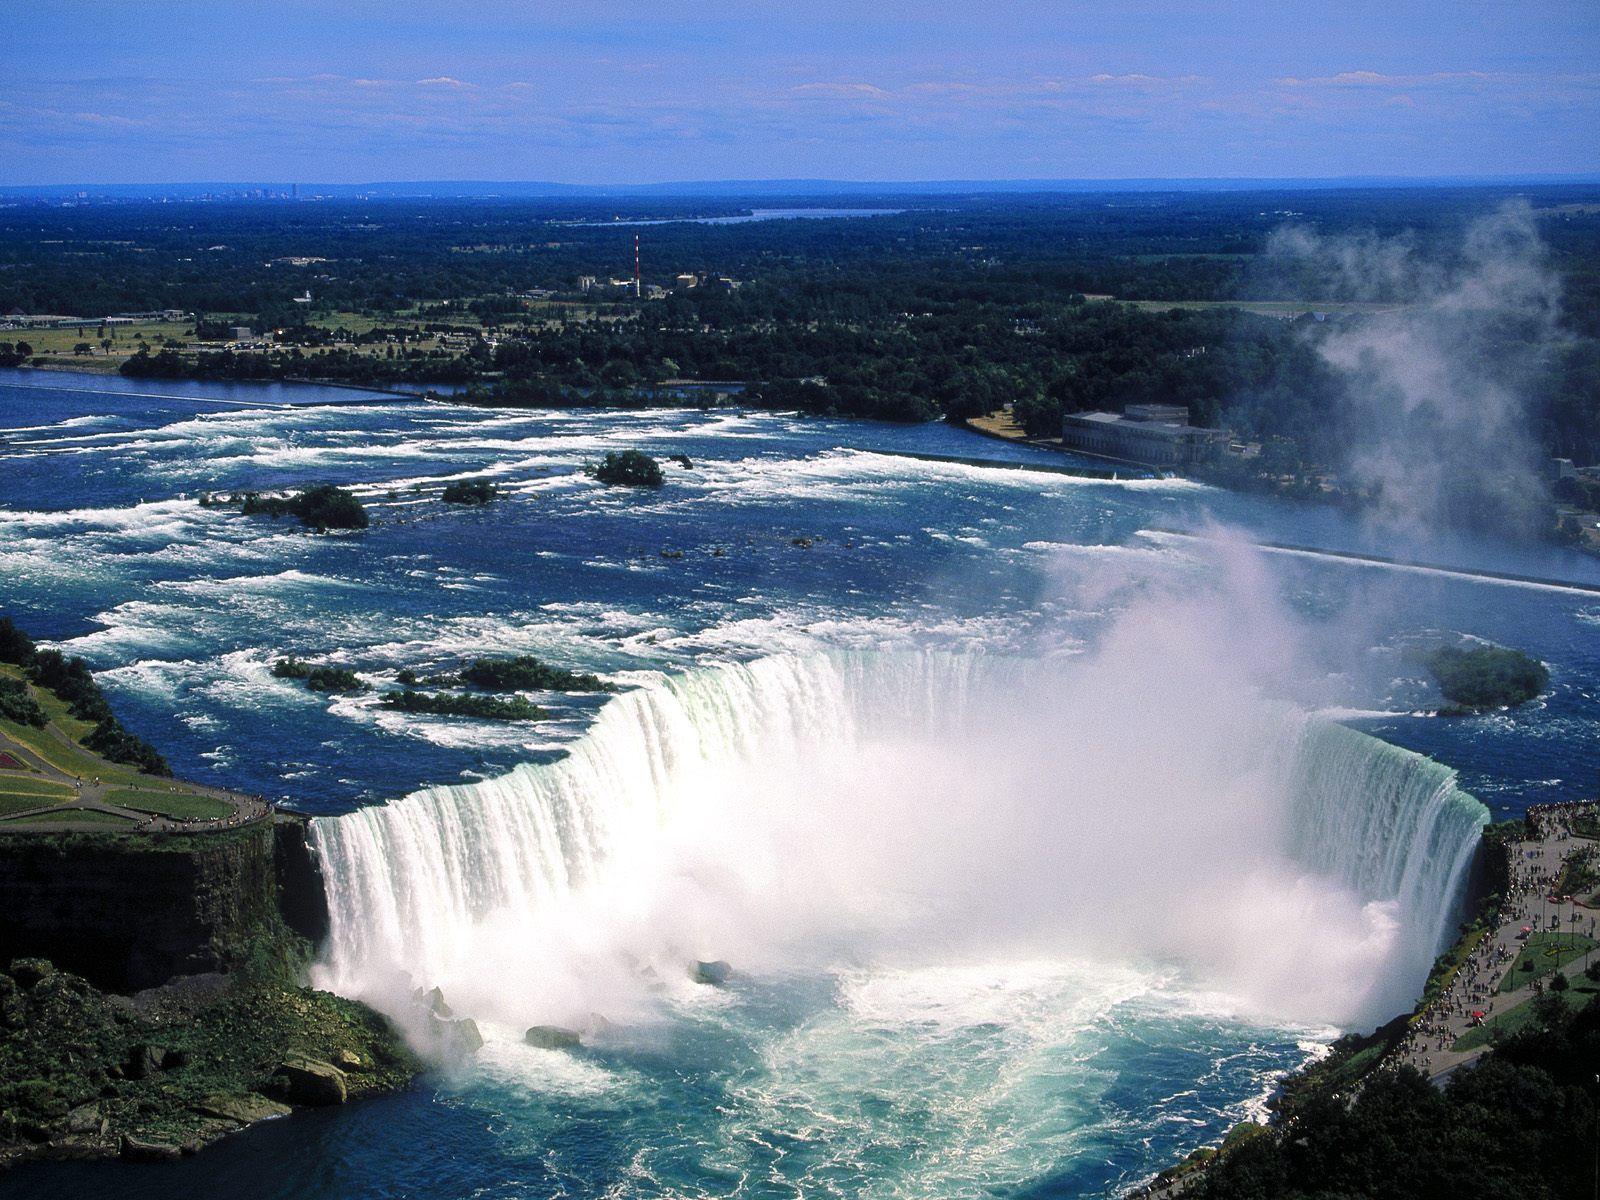 Niagara Falls Ontario Canada Wallpaper, iPhone Wallpaper, Facebook